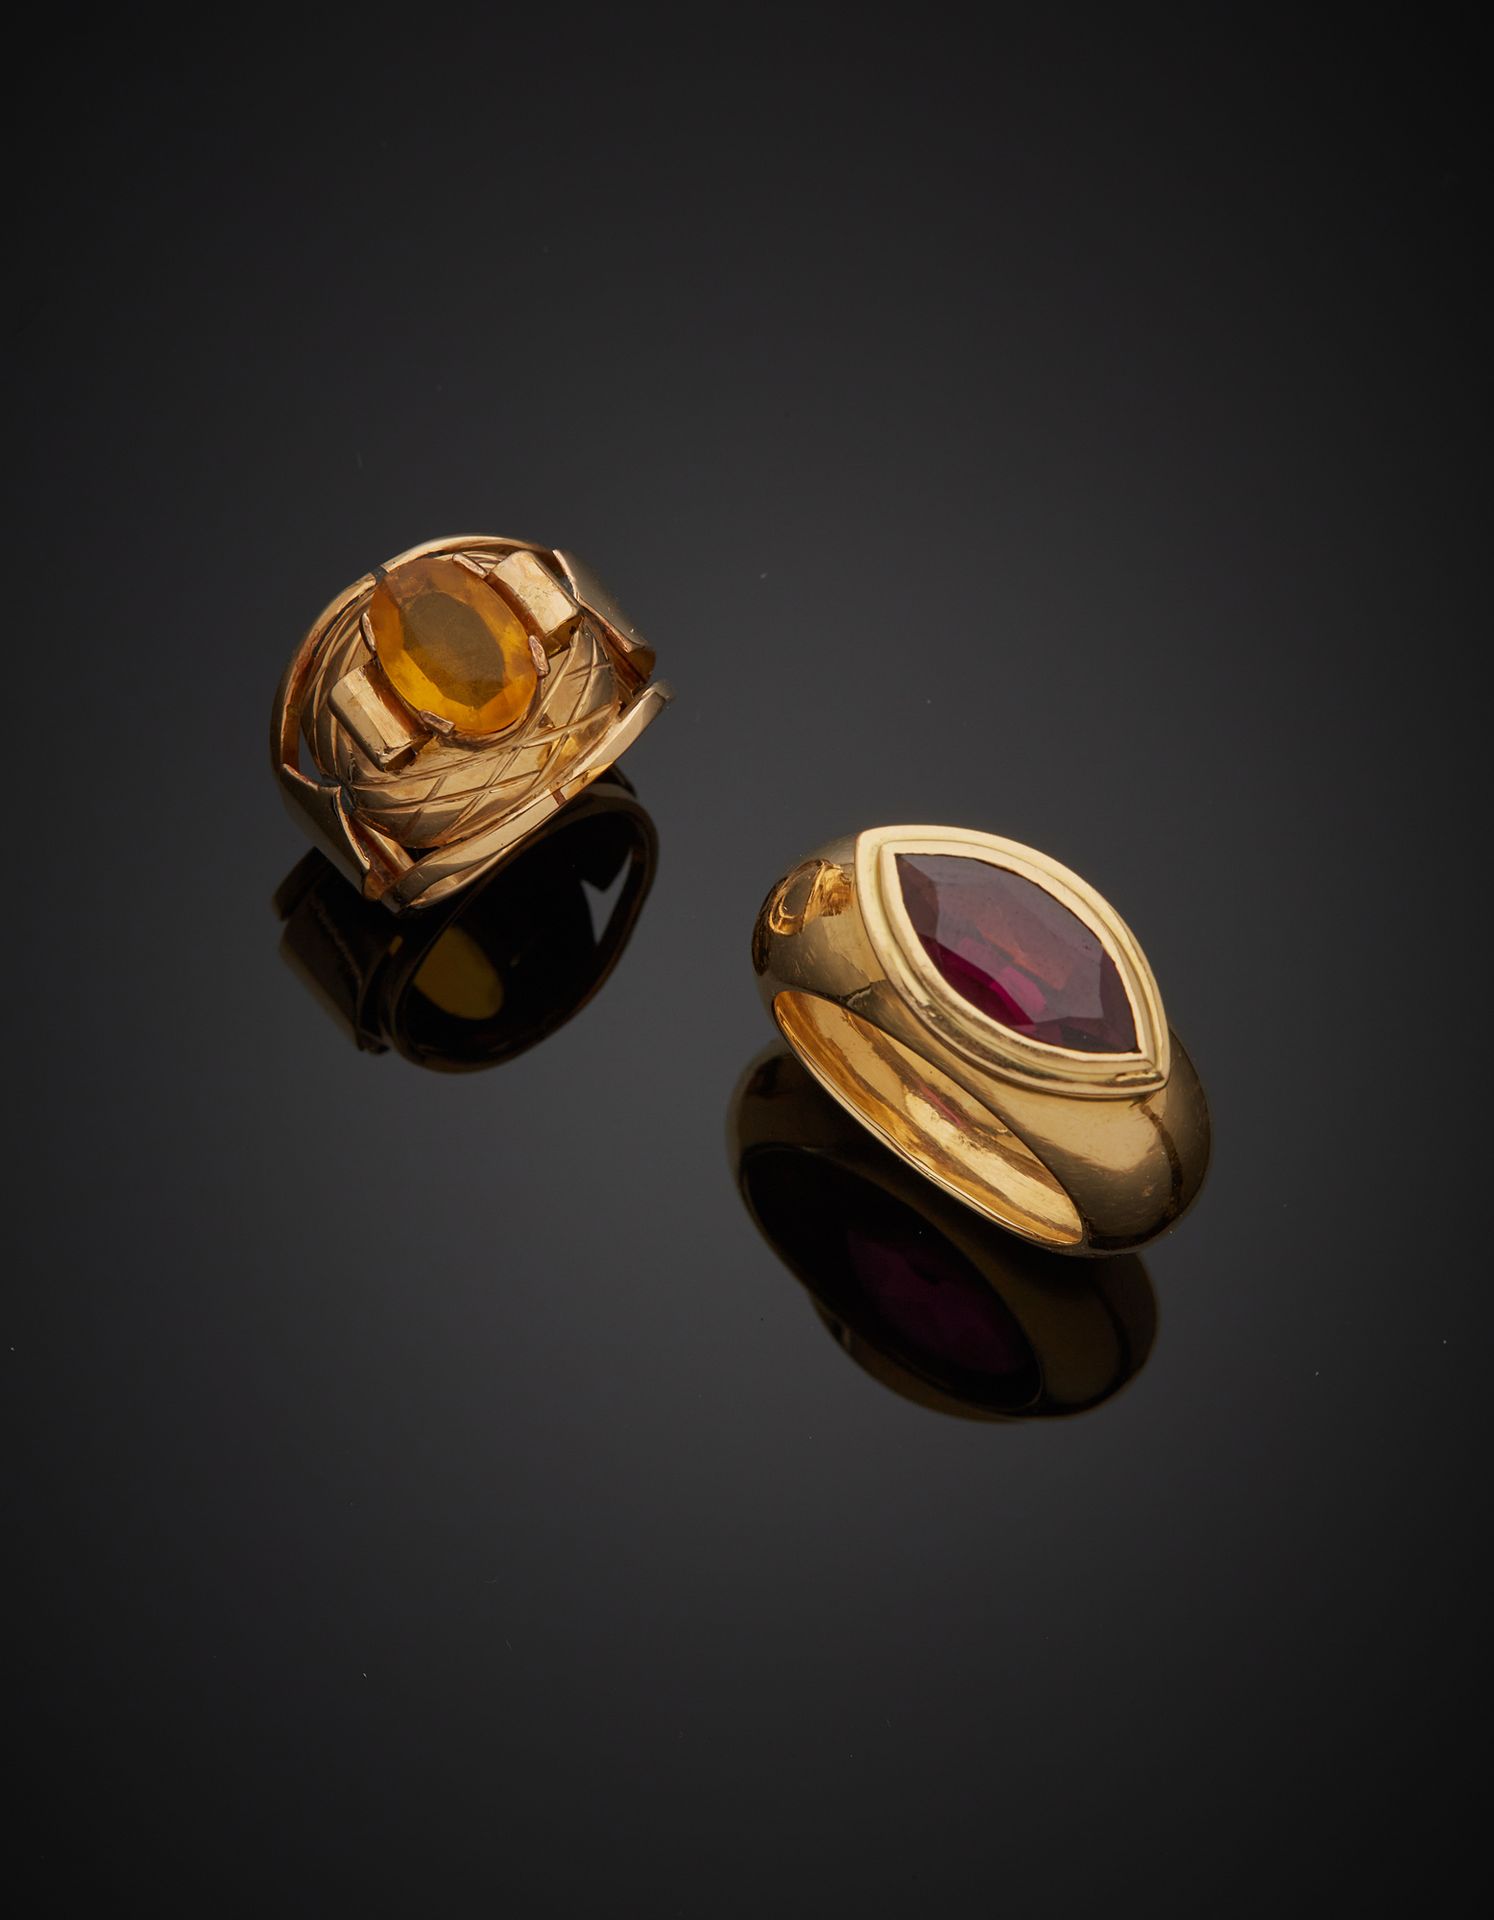 Null 一批两枚18K黄金750‰的戒指，其中一枚是镶嵌有脐带状紫罗兰宝石的带子，另一枚是镶嵌有椭圆形的黄色宝石。凹痕和宝石。

手指尺寸60和51 毛重17&hellip;